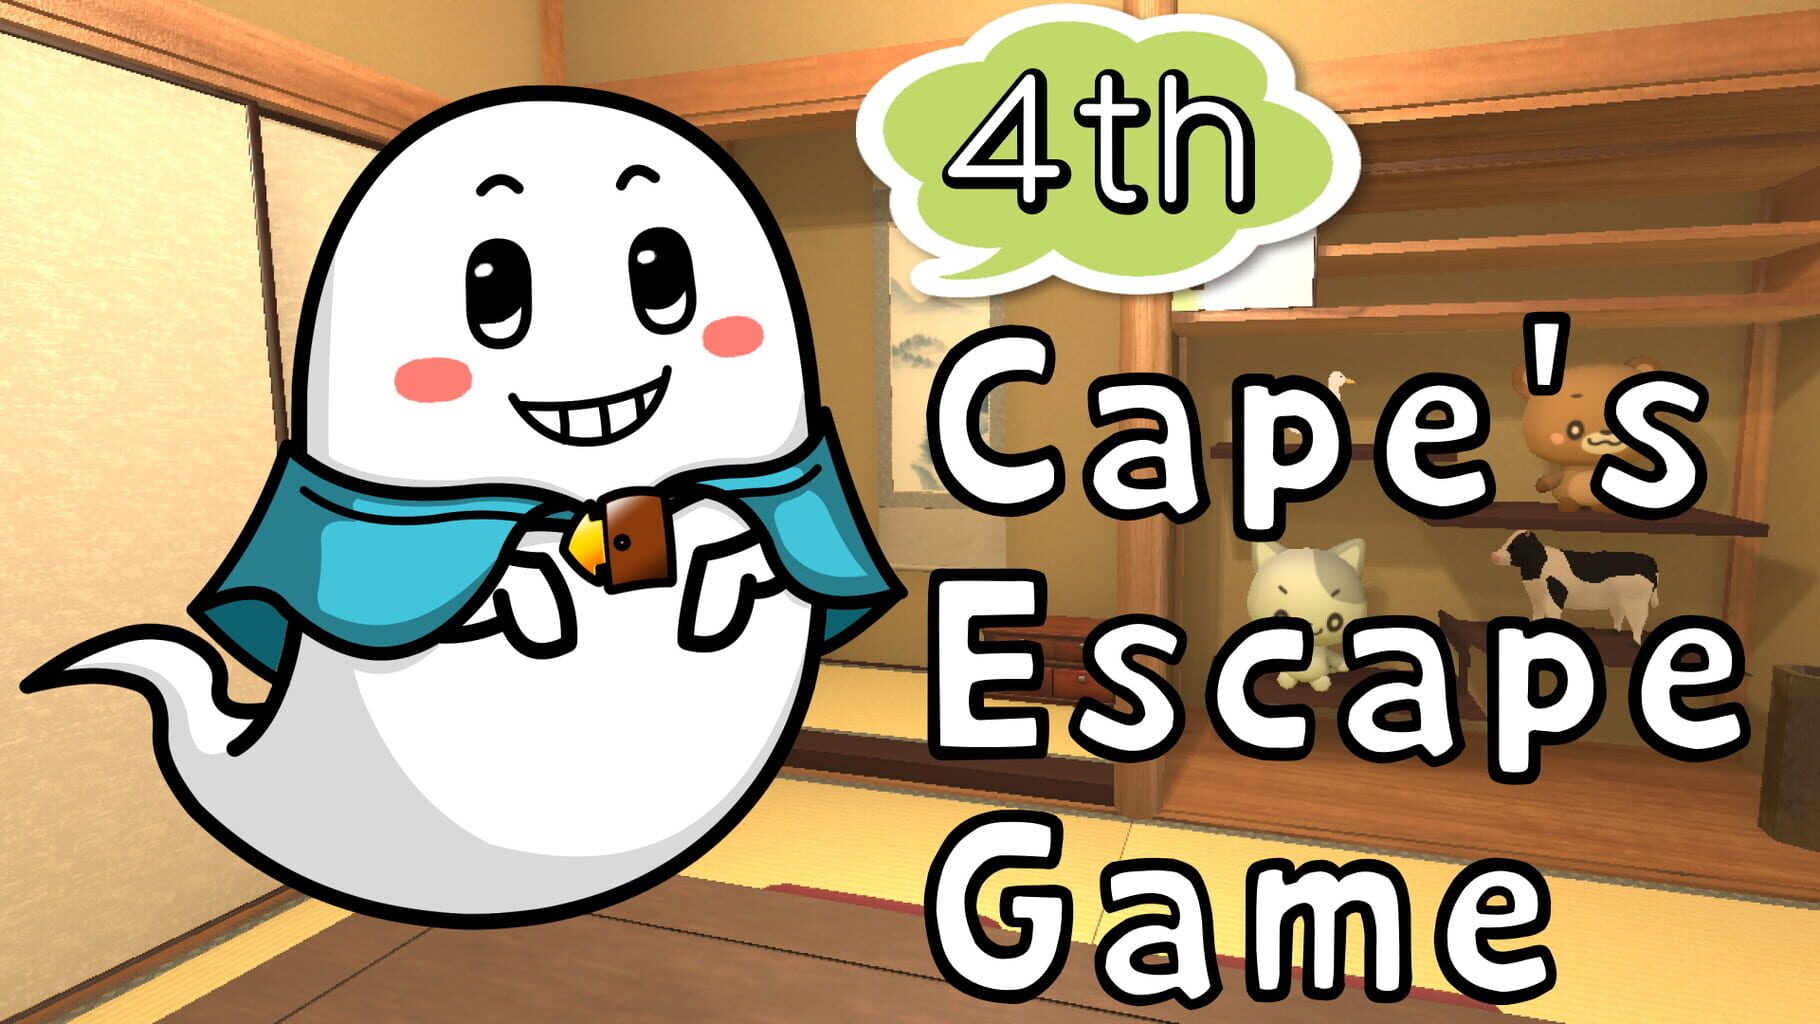 Cape's Escape Game 4th Room artwork